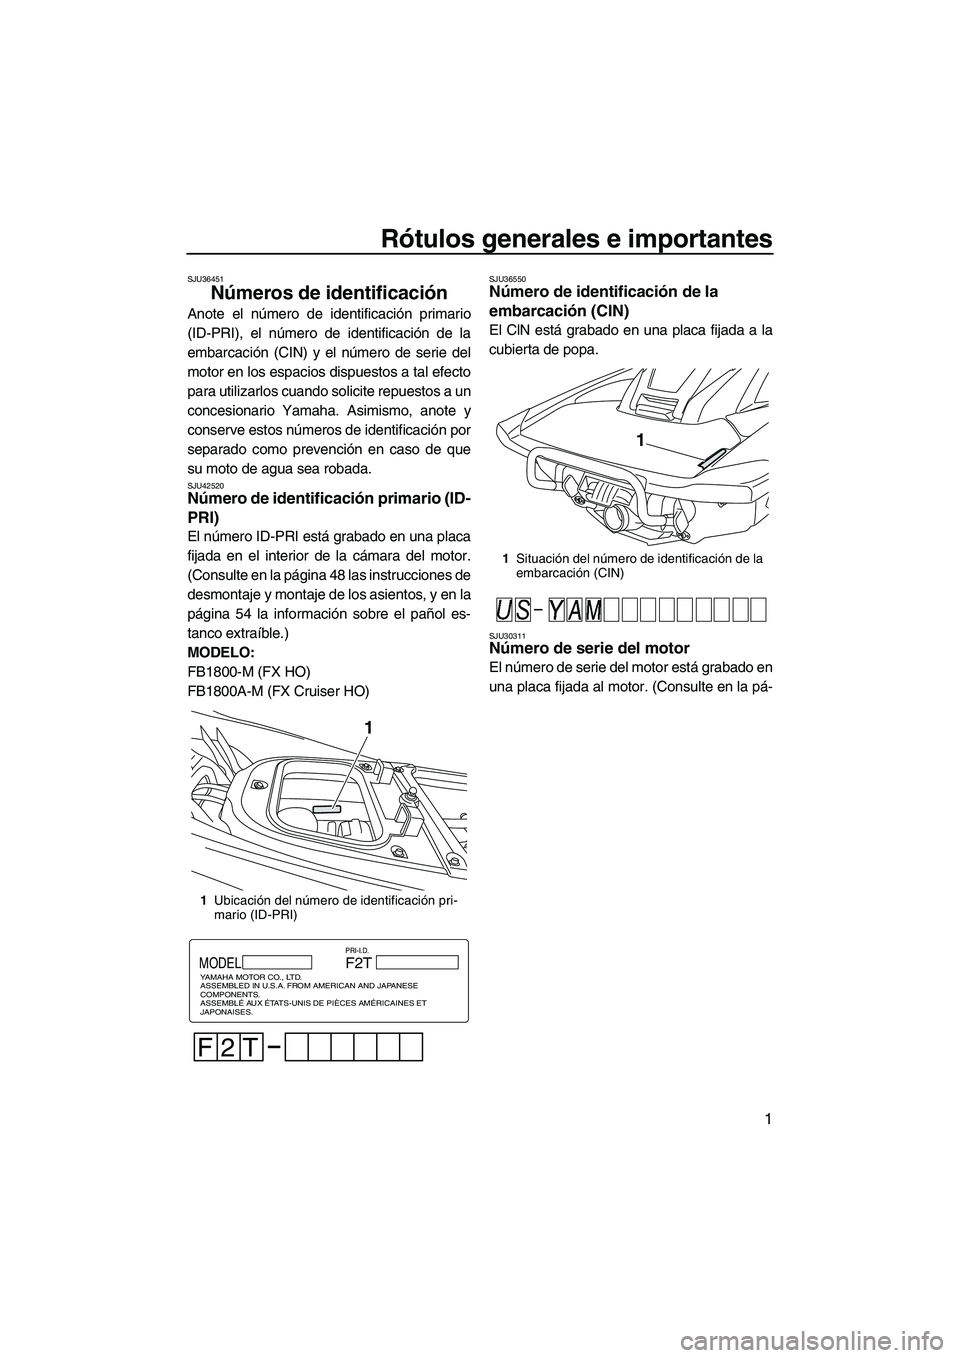 YAMAHA FX HO 2013  Manuale de Empleo (in Spanish) Rótulos generales e importantes
1
SJU36451
Números de identificación 
Anote el número de identificación primario
(ID-PRI), el número de identificación de la
embarcación (CIN) y el número de s